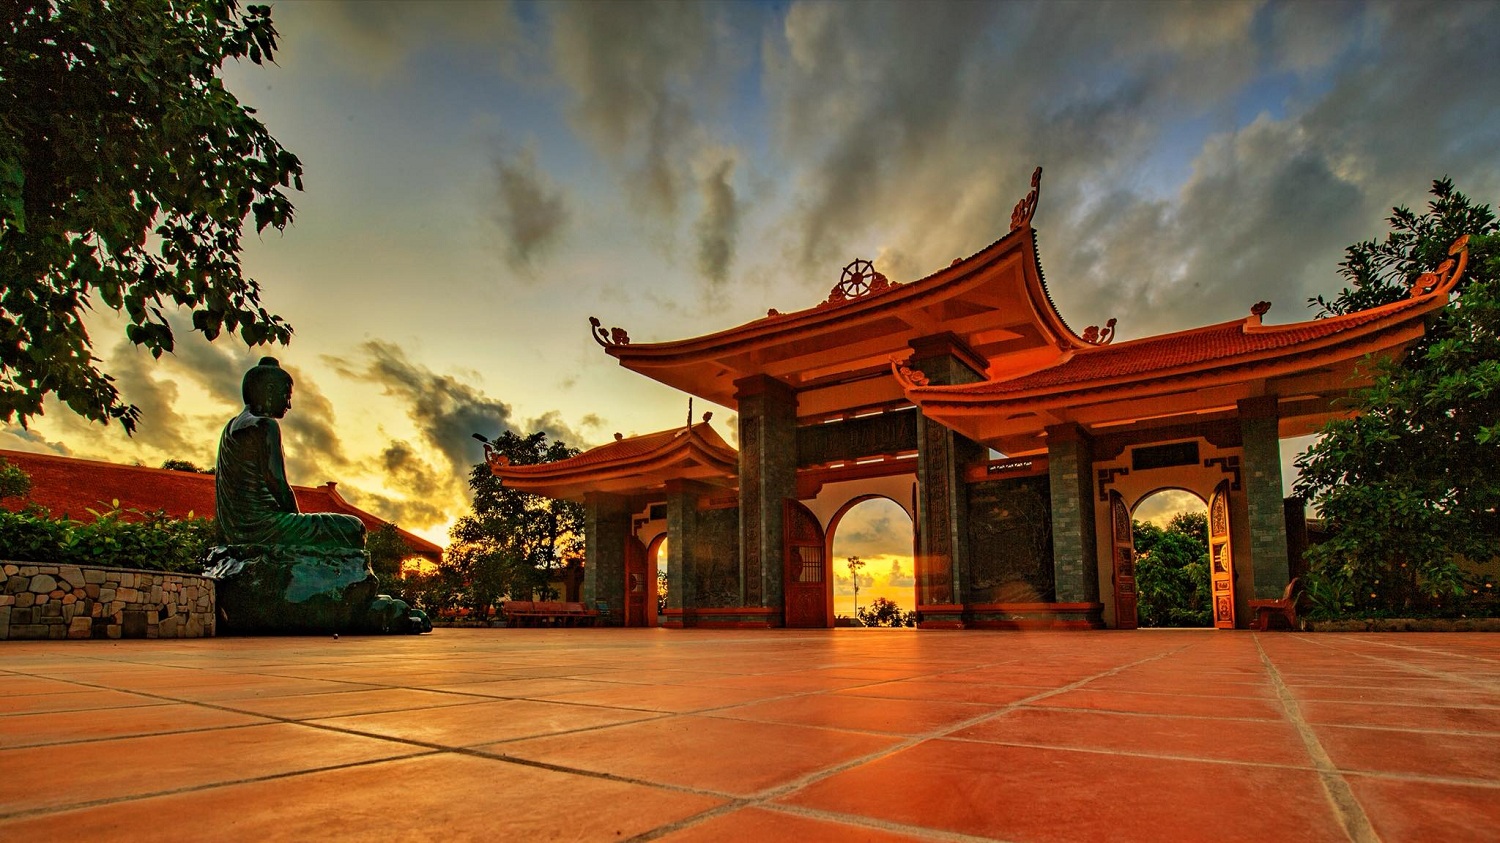 Chùa Hộ Quốc (Thiền Viện Trúc Lâm Hộ Quốc) - Đại danh thắng đừng bỏ lỡ của Phú Quốc